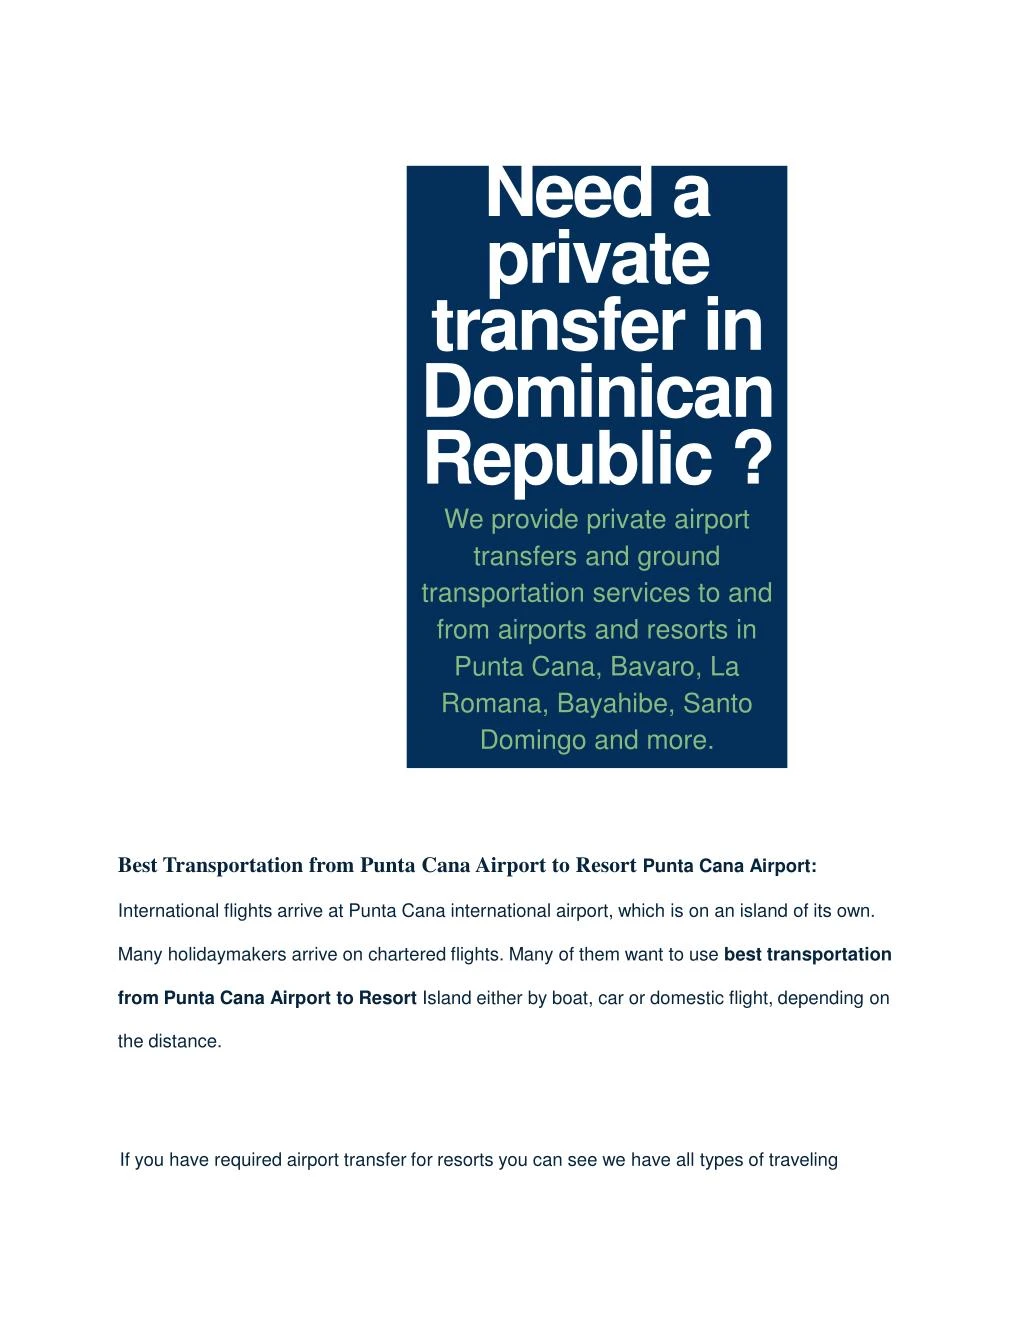 need a private transfer in dominican republic